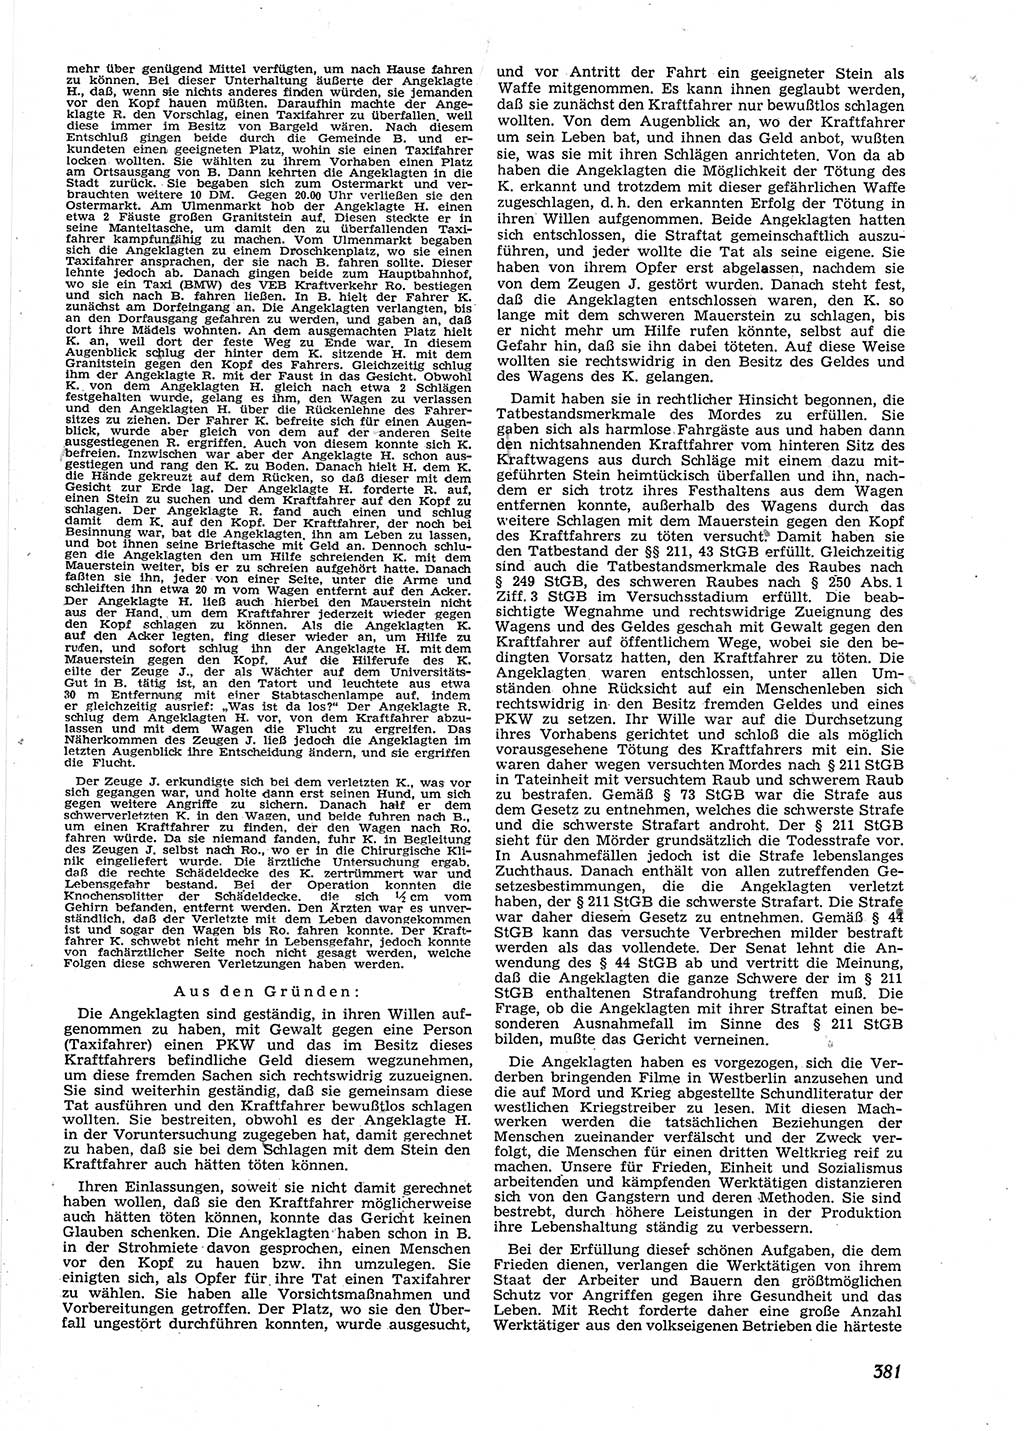 Neue Justiz (NJ), Zeitschrift für Recht und Rechtswissenschaft [Deutsche Demokratische Republik (DDR)], 9. Jahrgang 1955, Seite 381 (NJ DDR 1955, S. 381)